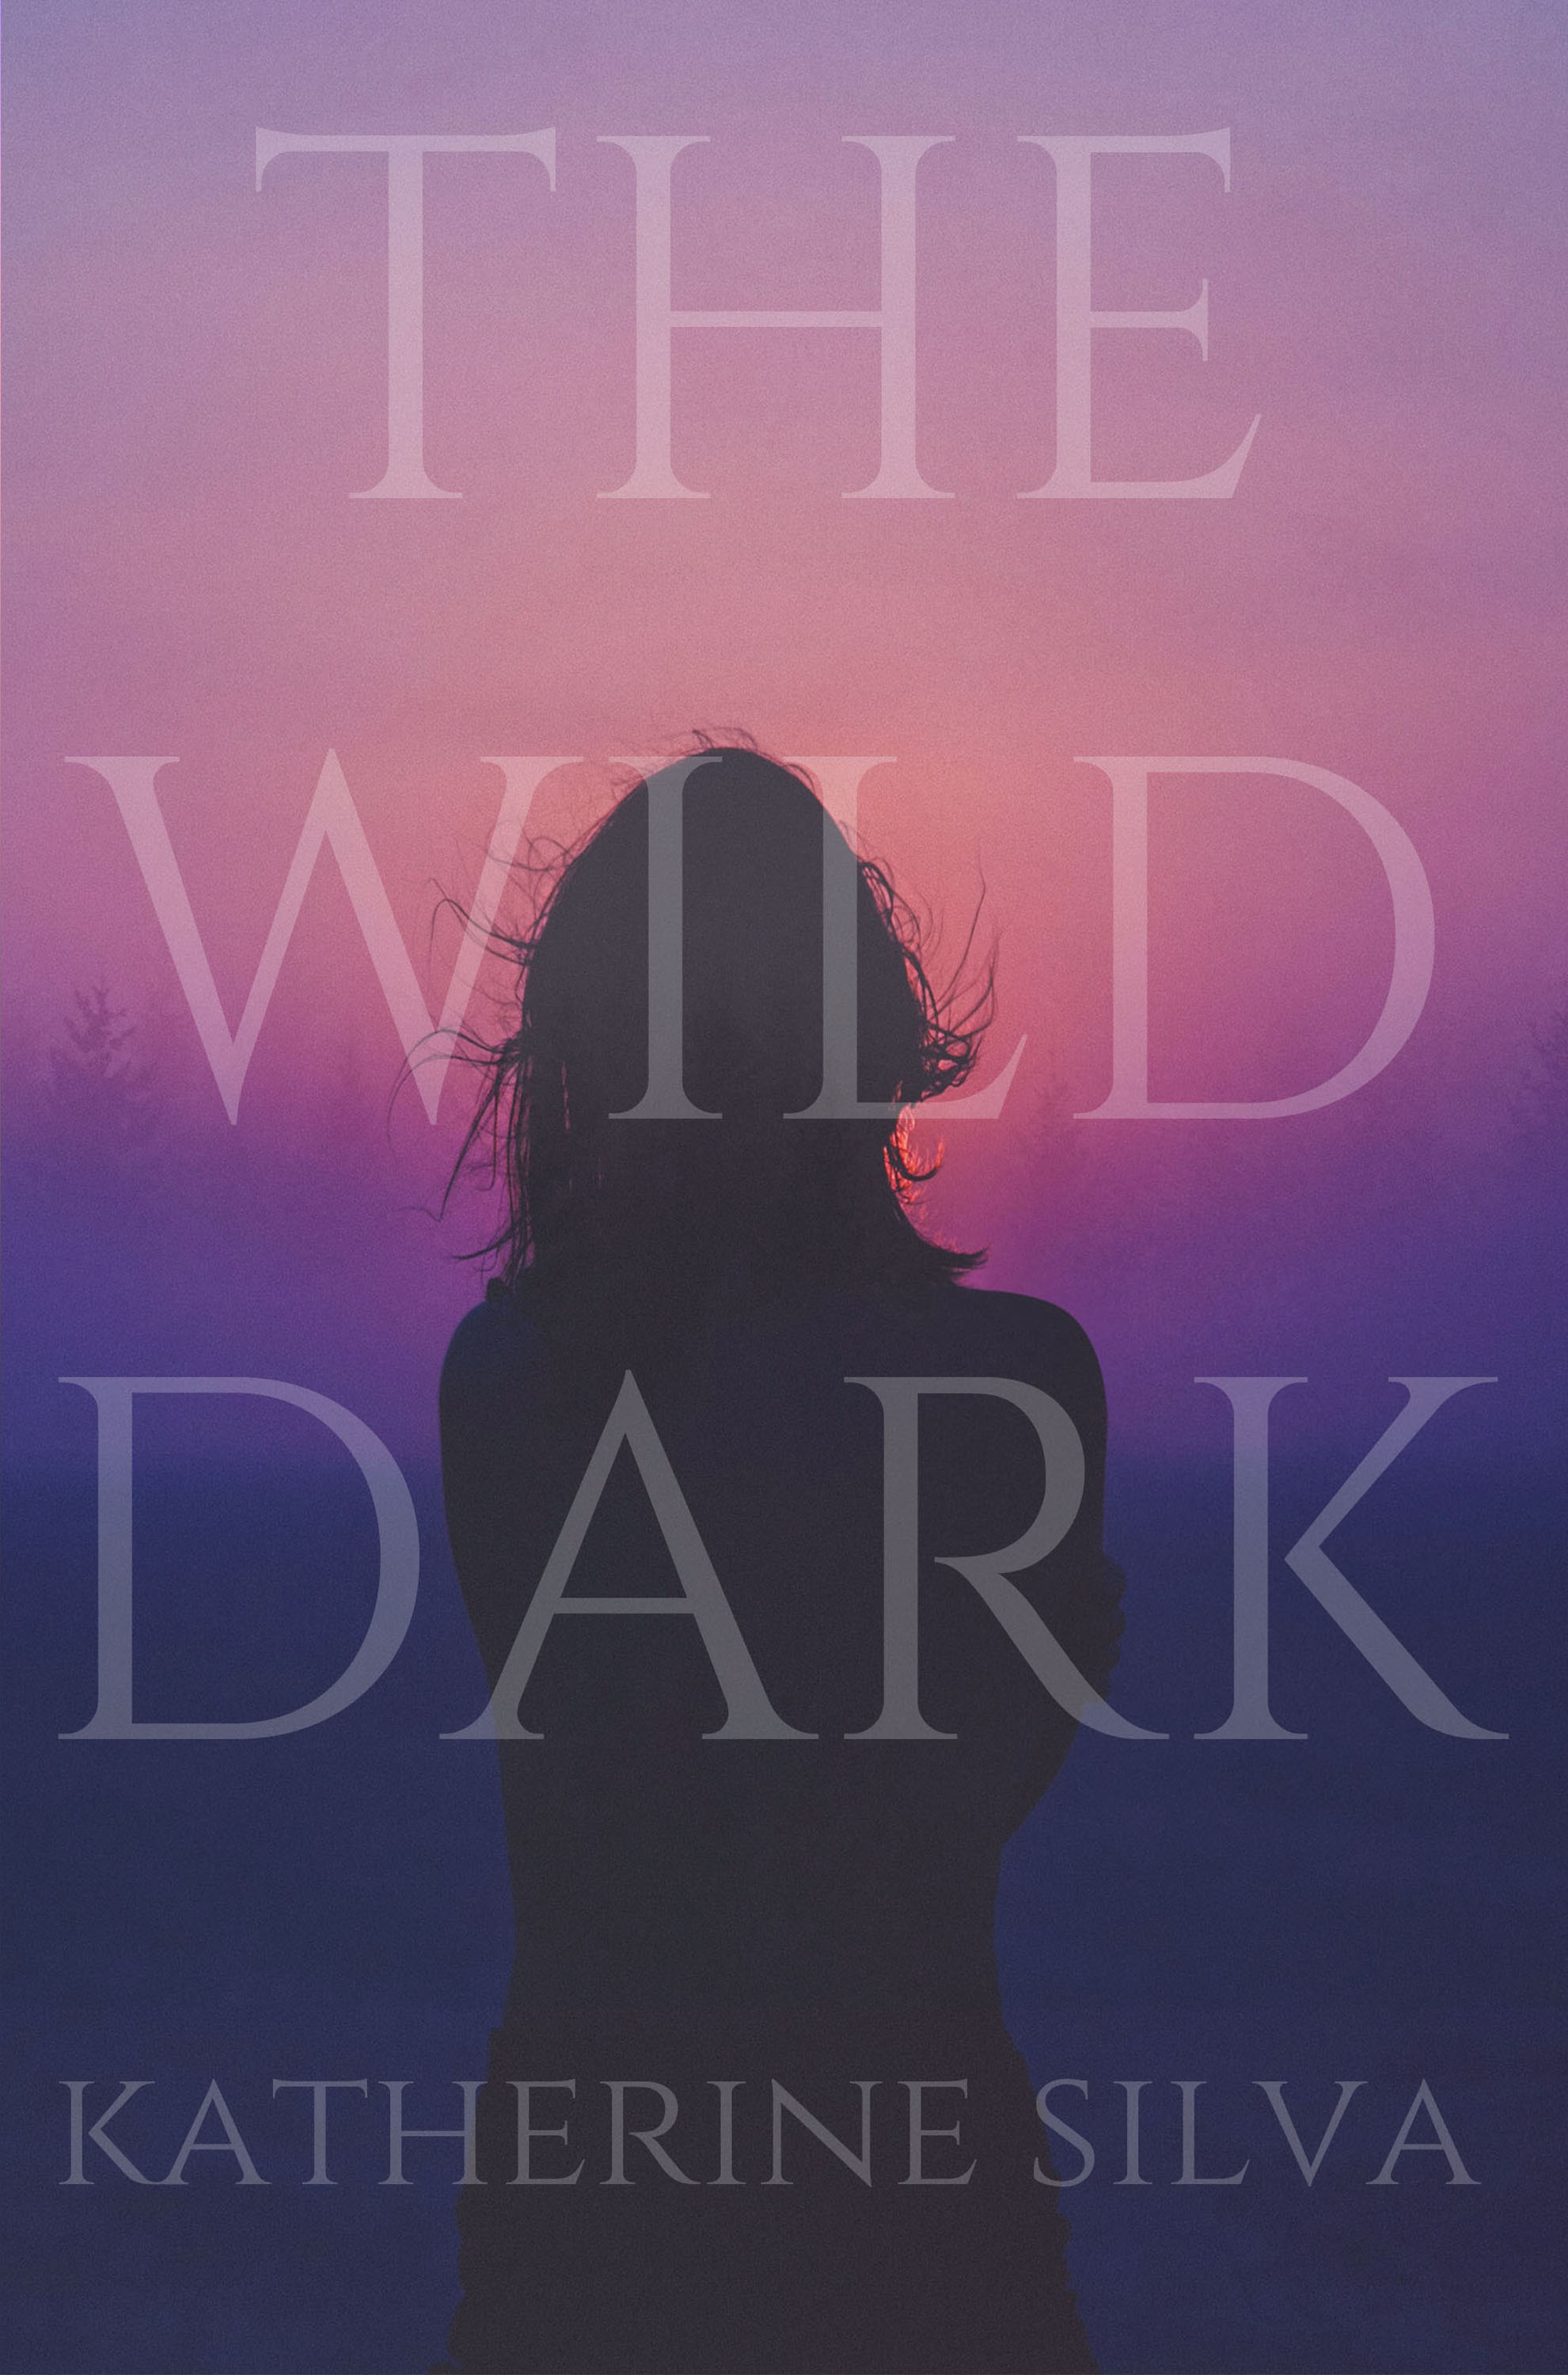 The Wild Dark